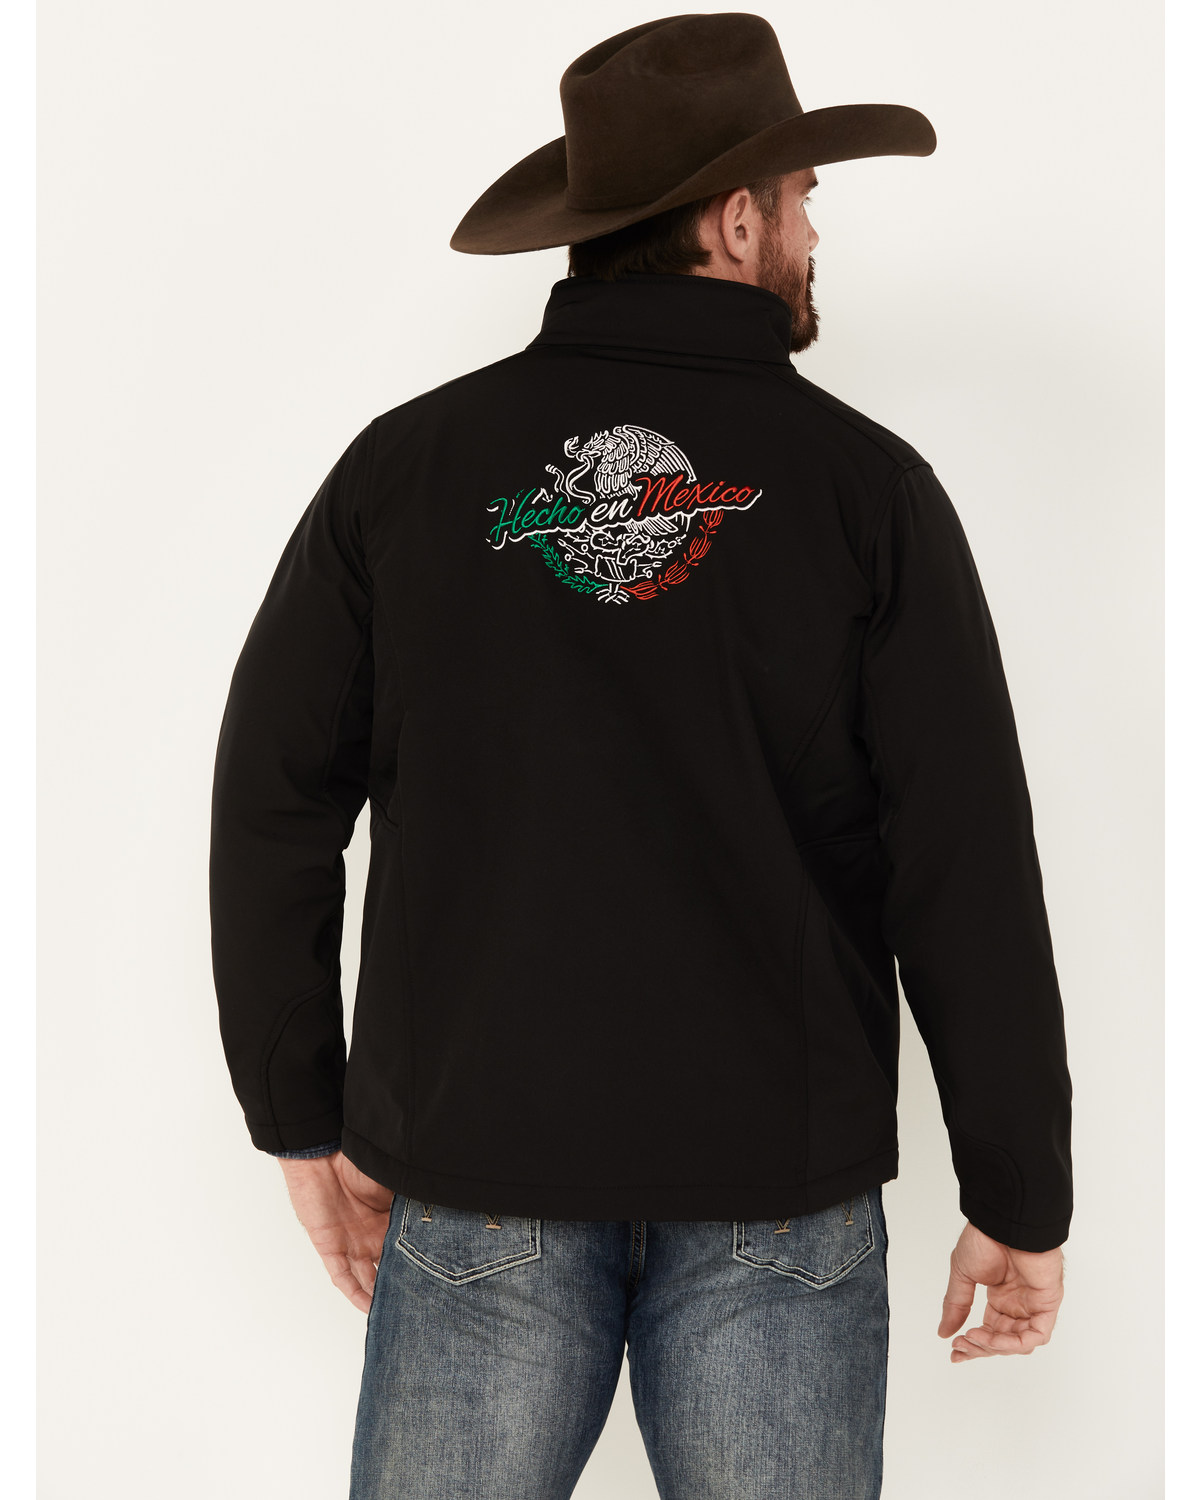 Cowboy Hardware Men's Hecho En Mexico Softshell Jacket